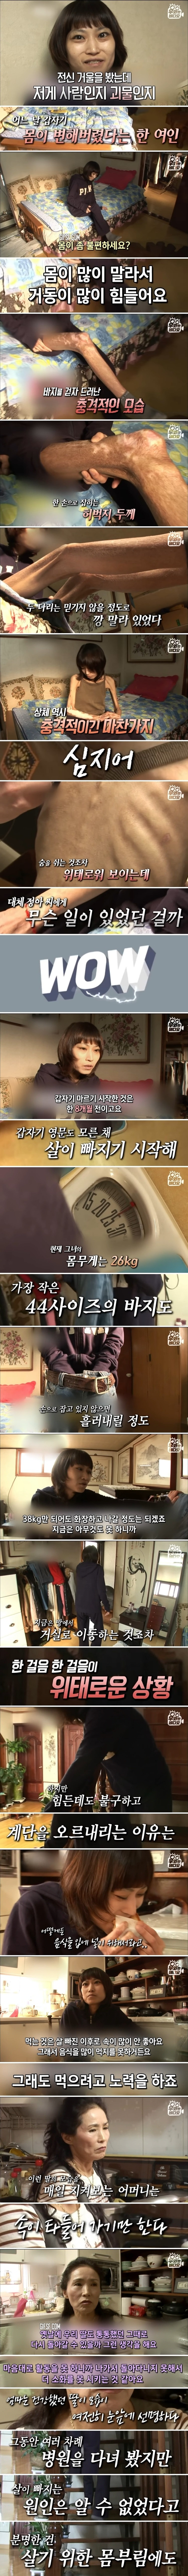 병명도 이유도 알 수 없는 저체중증, 26kg 여자의 소원 (1).jpg